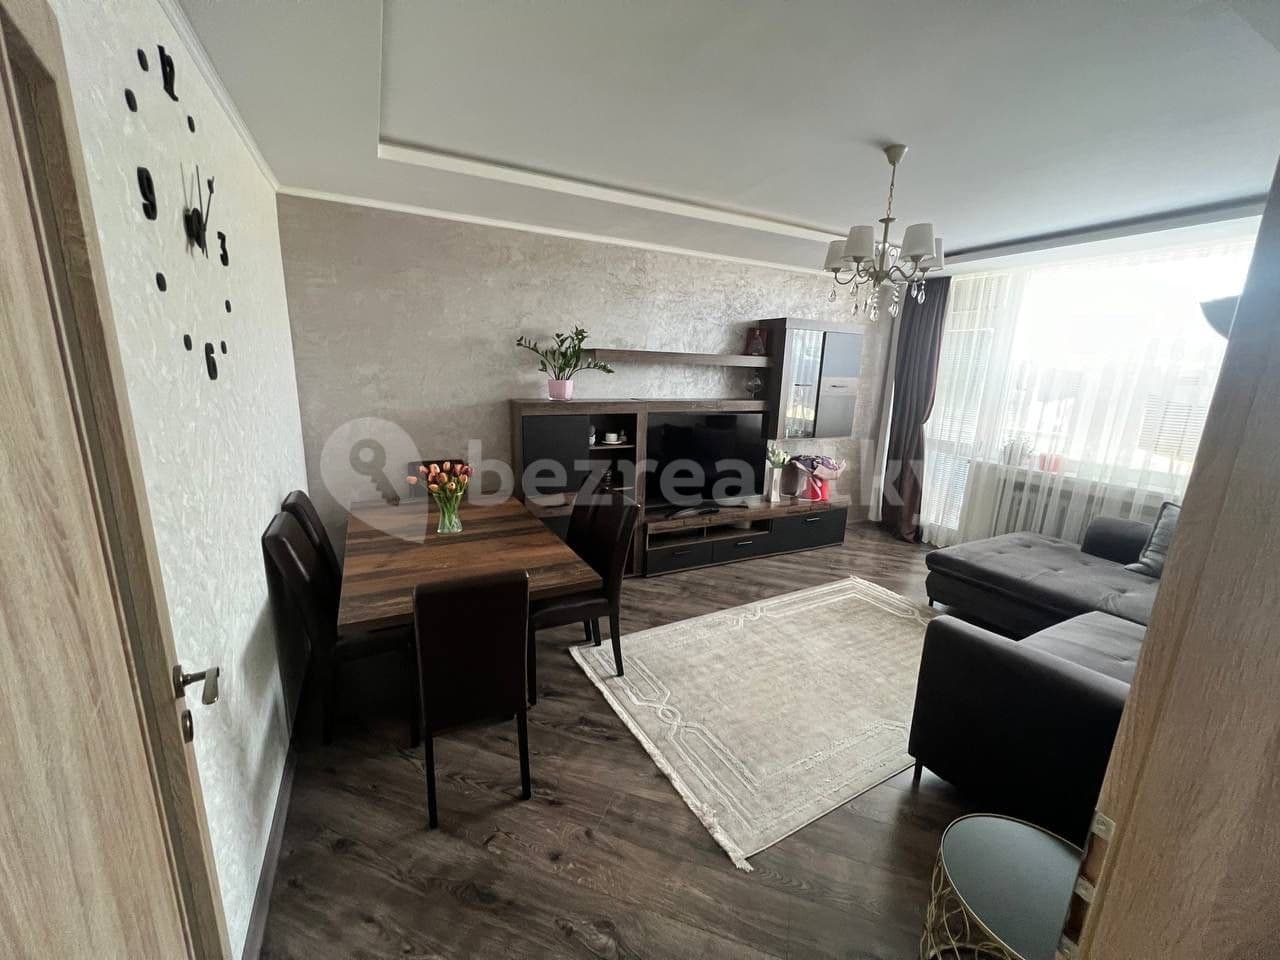 4 bedroom flat for sale, 80 m², Budovatelů, Jablonec nad Nisou, Liberecký Region